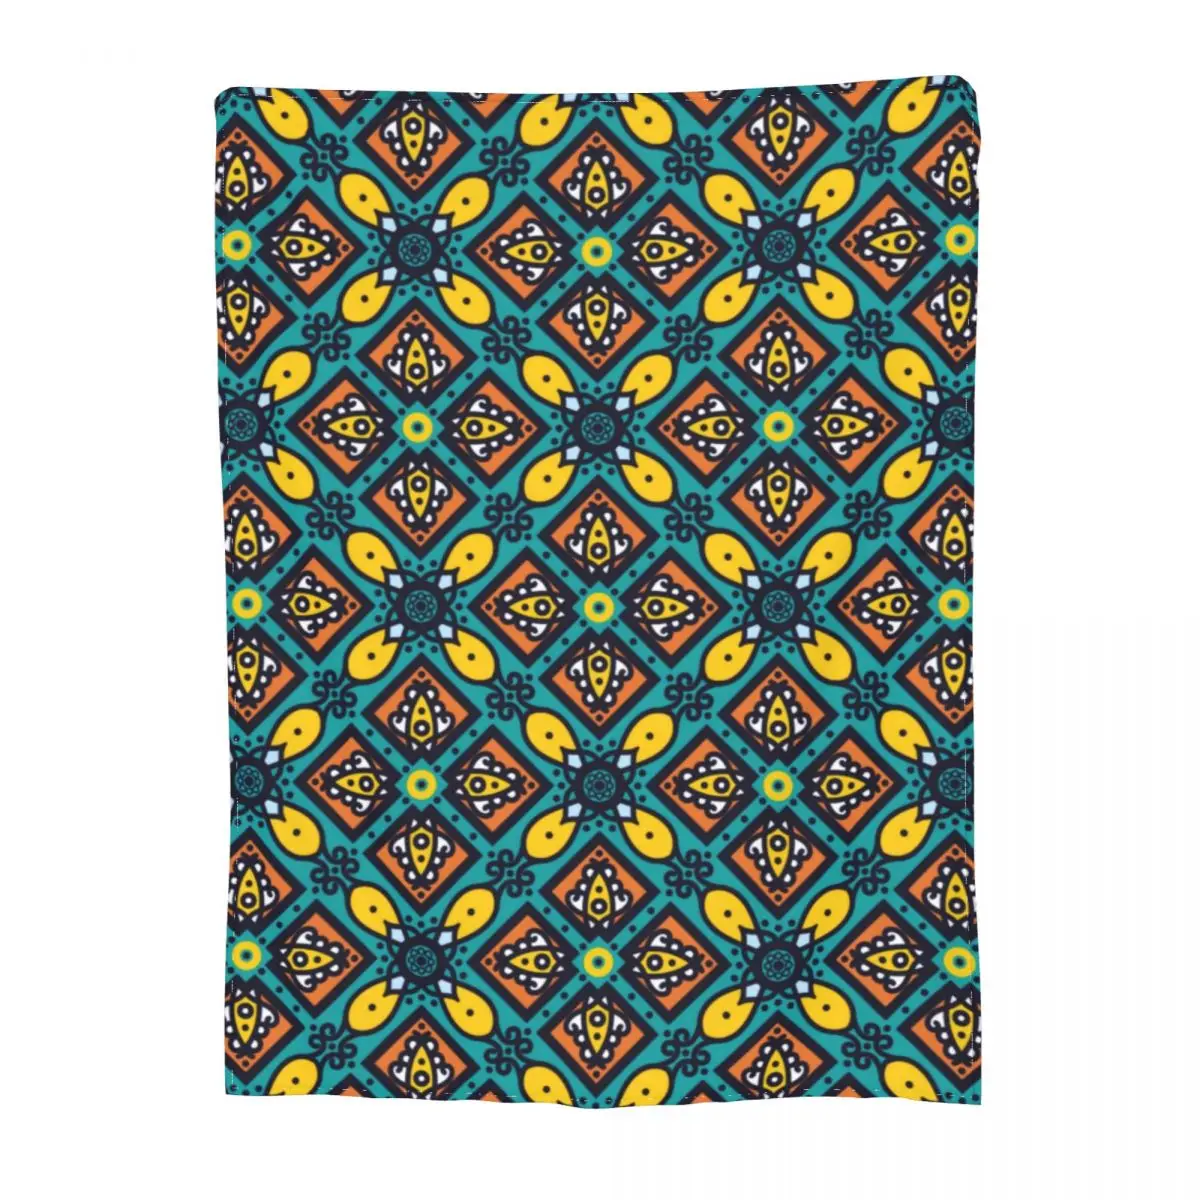 

Плед этническое одеяло с принтом винтажное цветочное для дивана индивидуальное одеяло симпатичное для кровати одеяло s